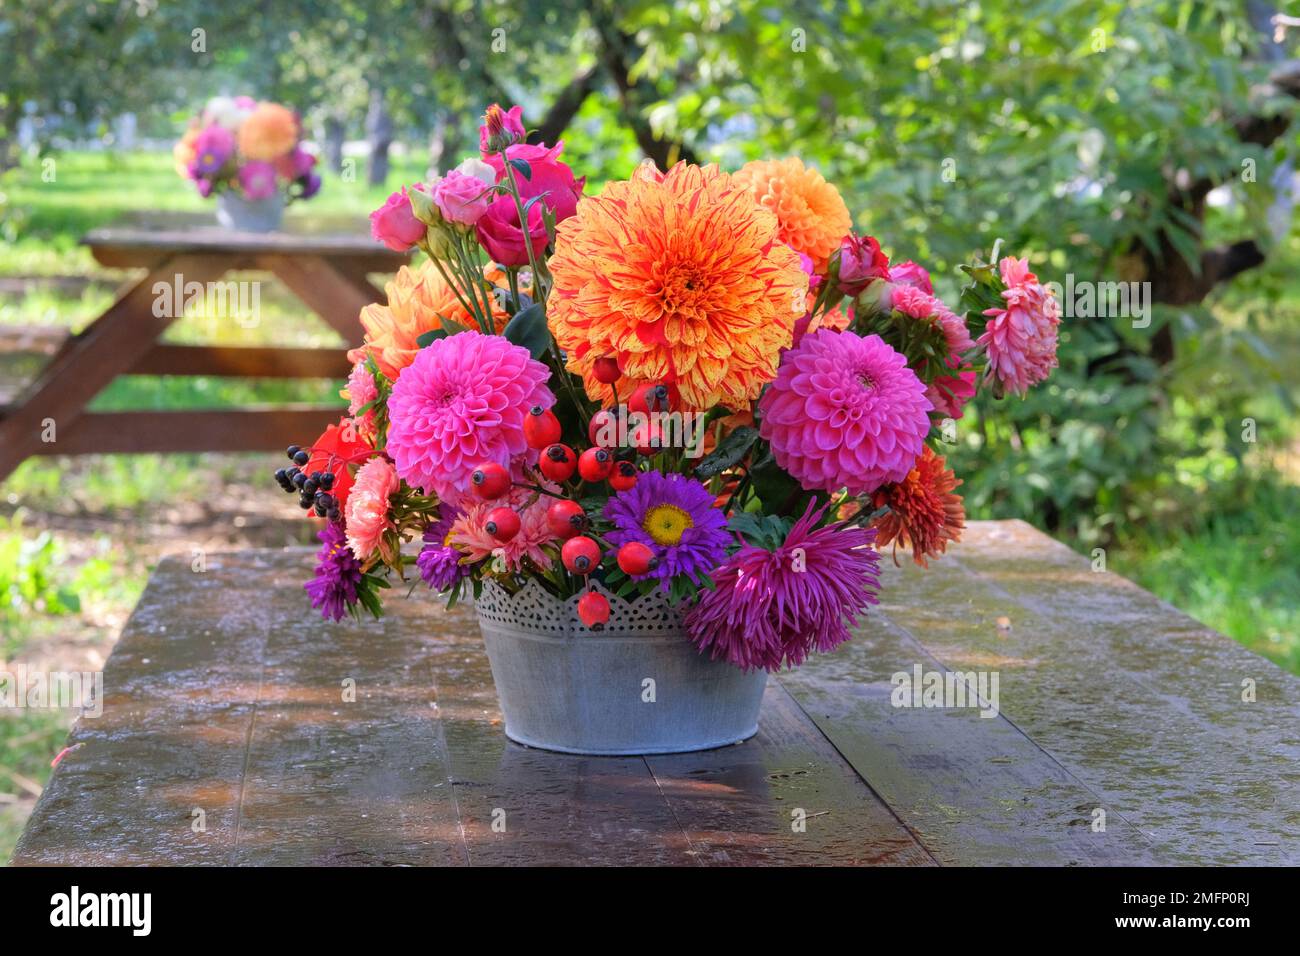 Rosen, Astern, Dahilia in Vase im Garten auf einem Holztisch. Sonniger Tag. Veranda im Garten. Stockfoto